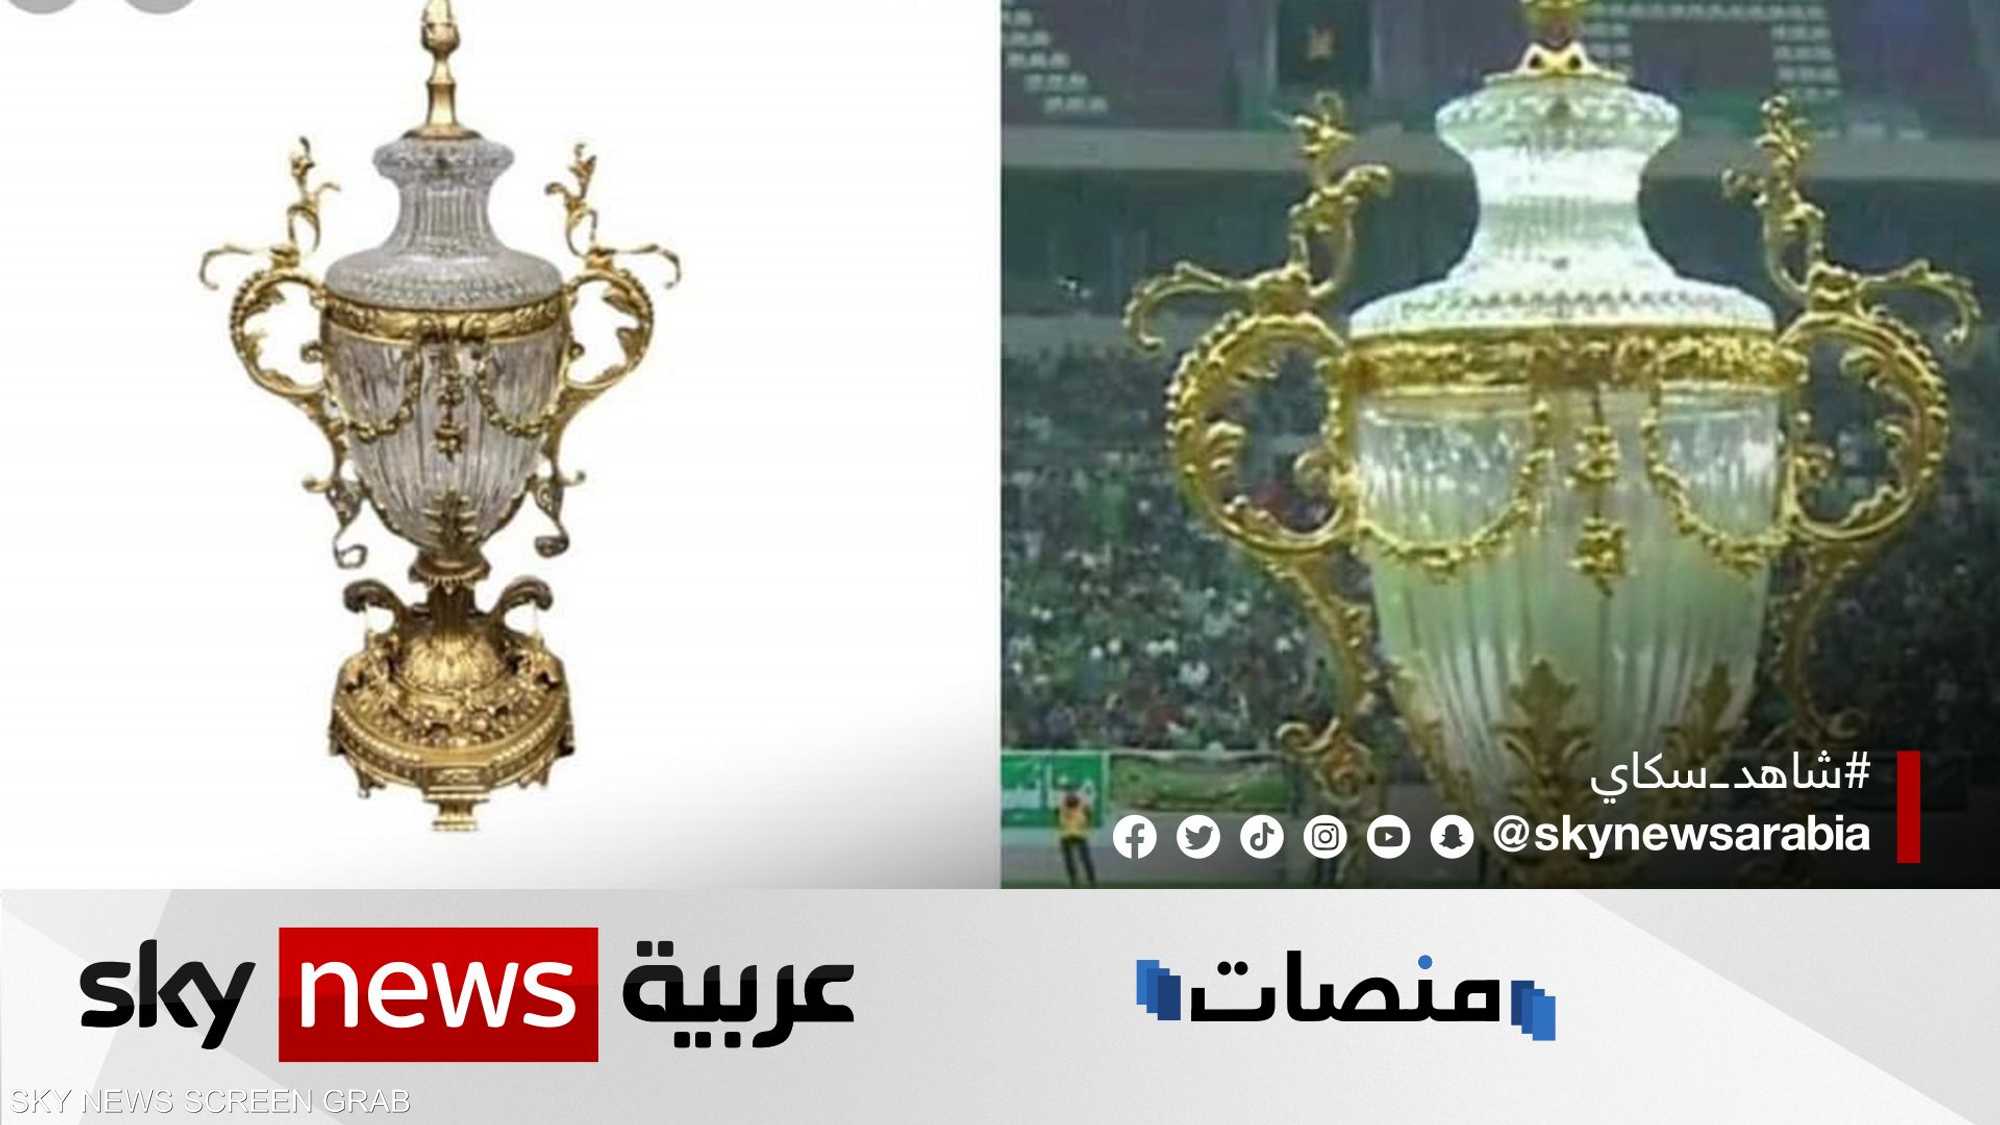 تصميم كأس السوبر العراقي يثير الجدل والسخرية